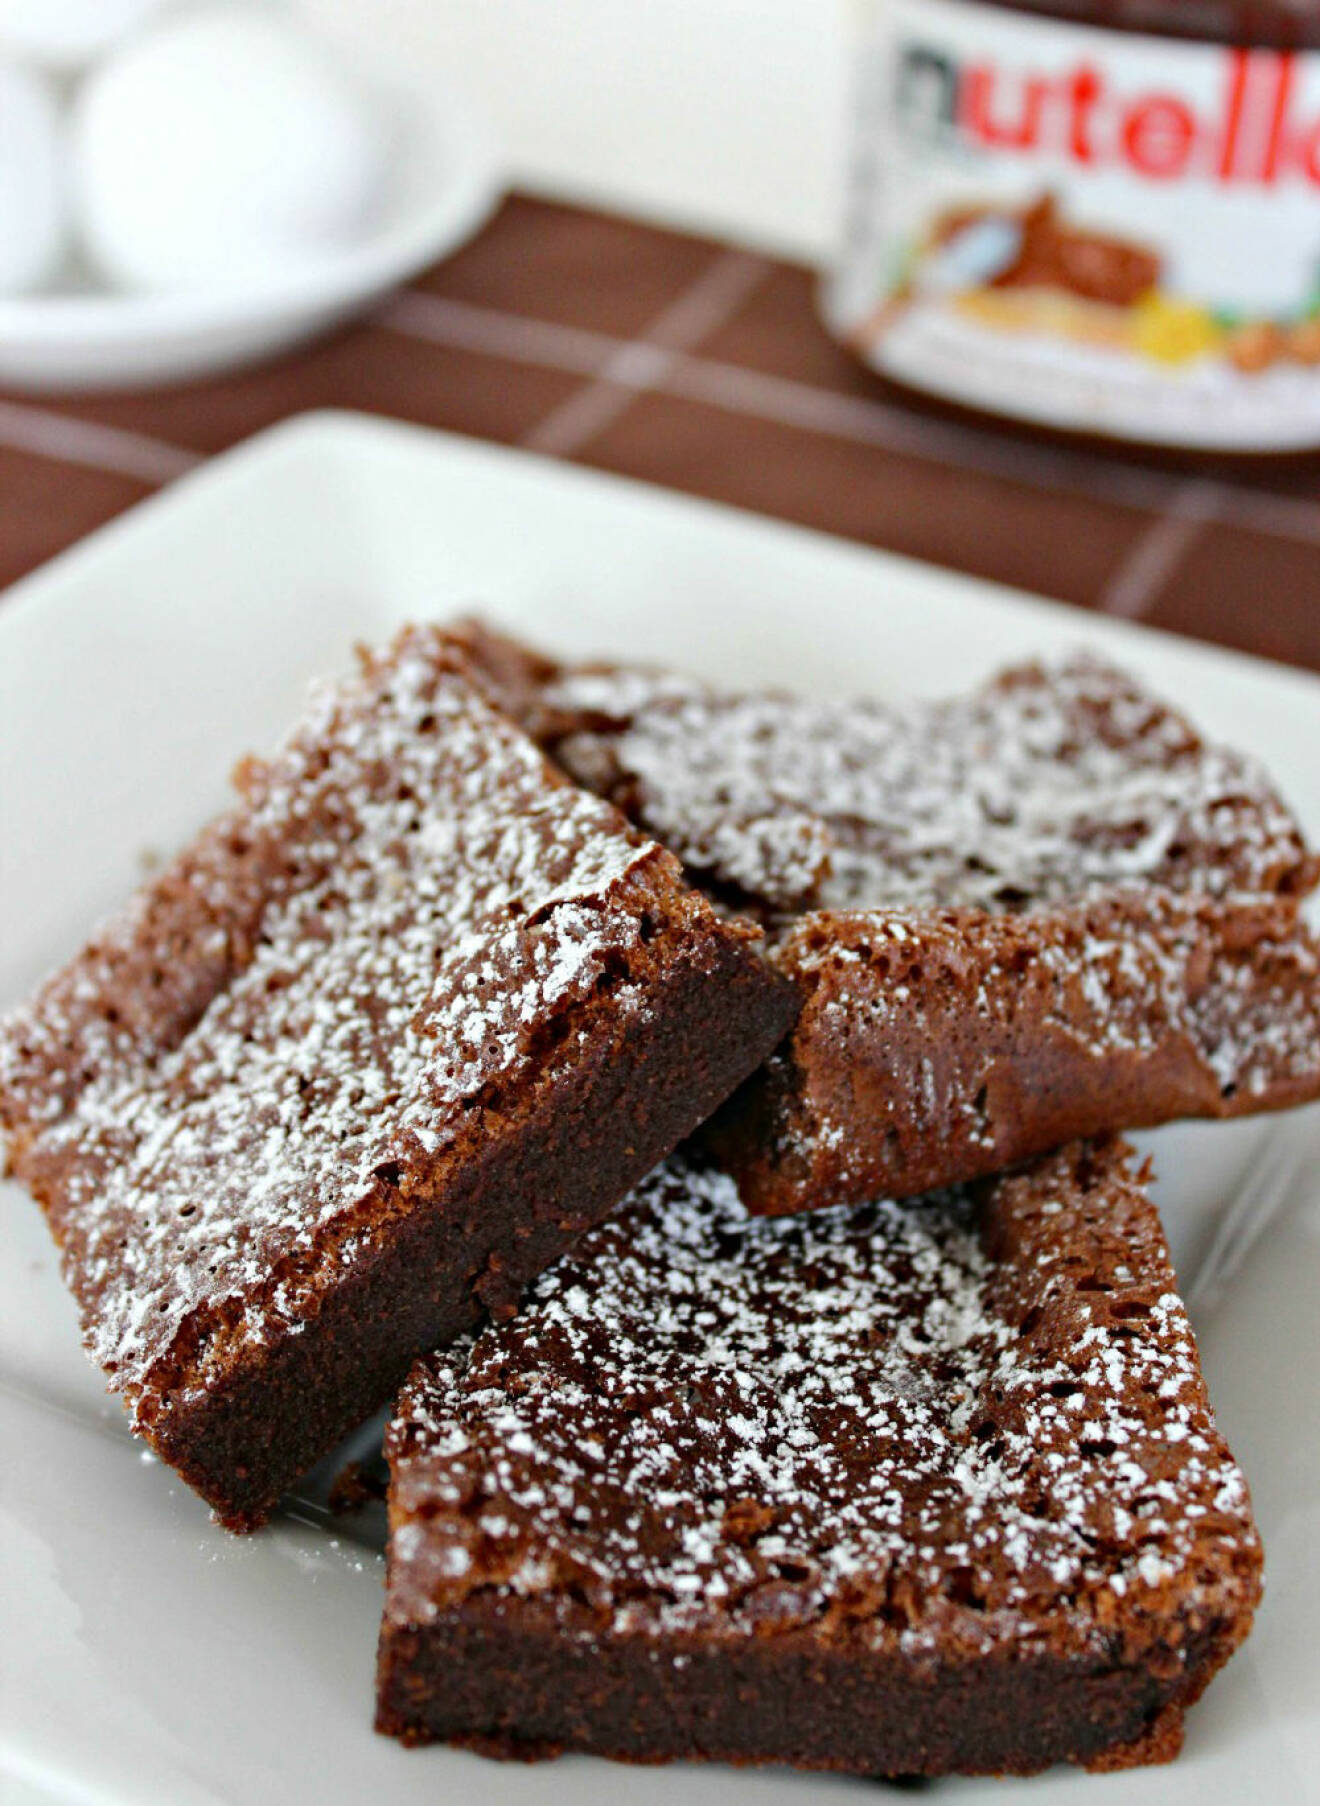 Recept på brownies med nutella som du kan baka hemma.